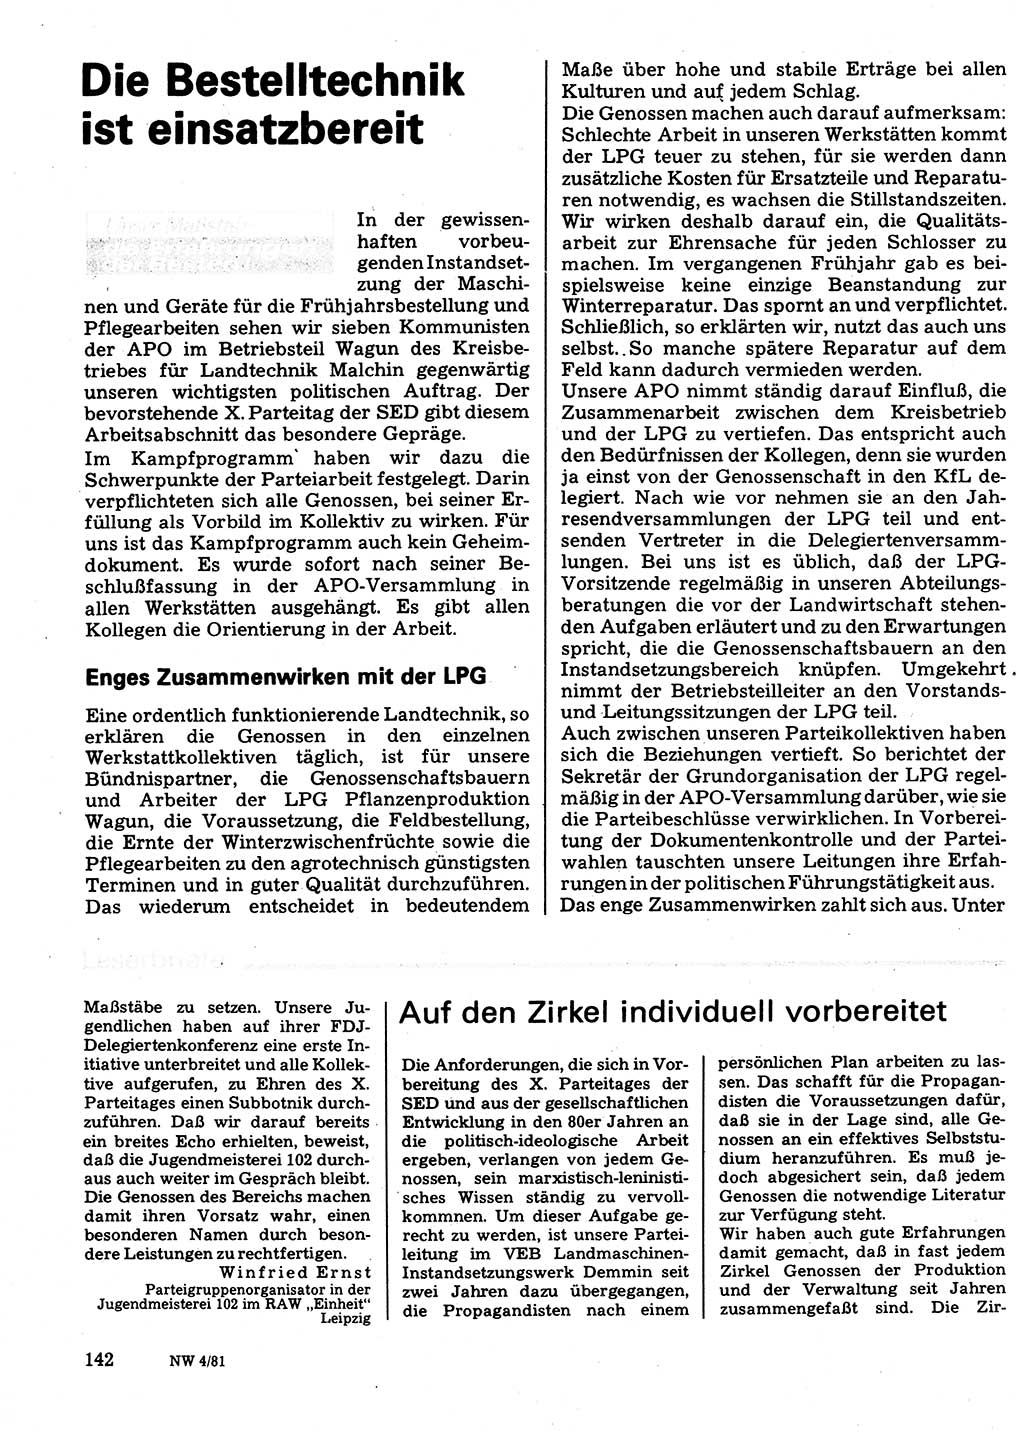 Neuer Weg (NW), Organ des Zentralkomitees (ZK) der SED (Sozialistische Einheitspartei Deutschlands) für Fragen des Parteilebens, 36. Jahrgang [Deutsche Demokratische Republik (DDR)] 1981, Seite 142 (NW ZK SED DDR 1981, S. 142)